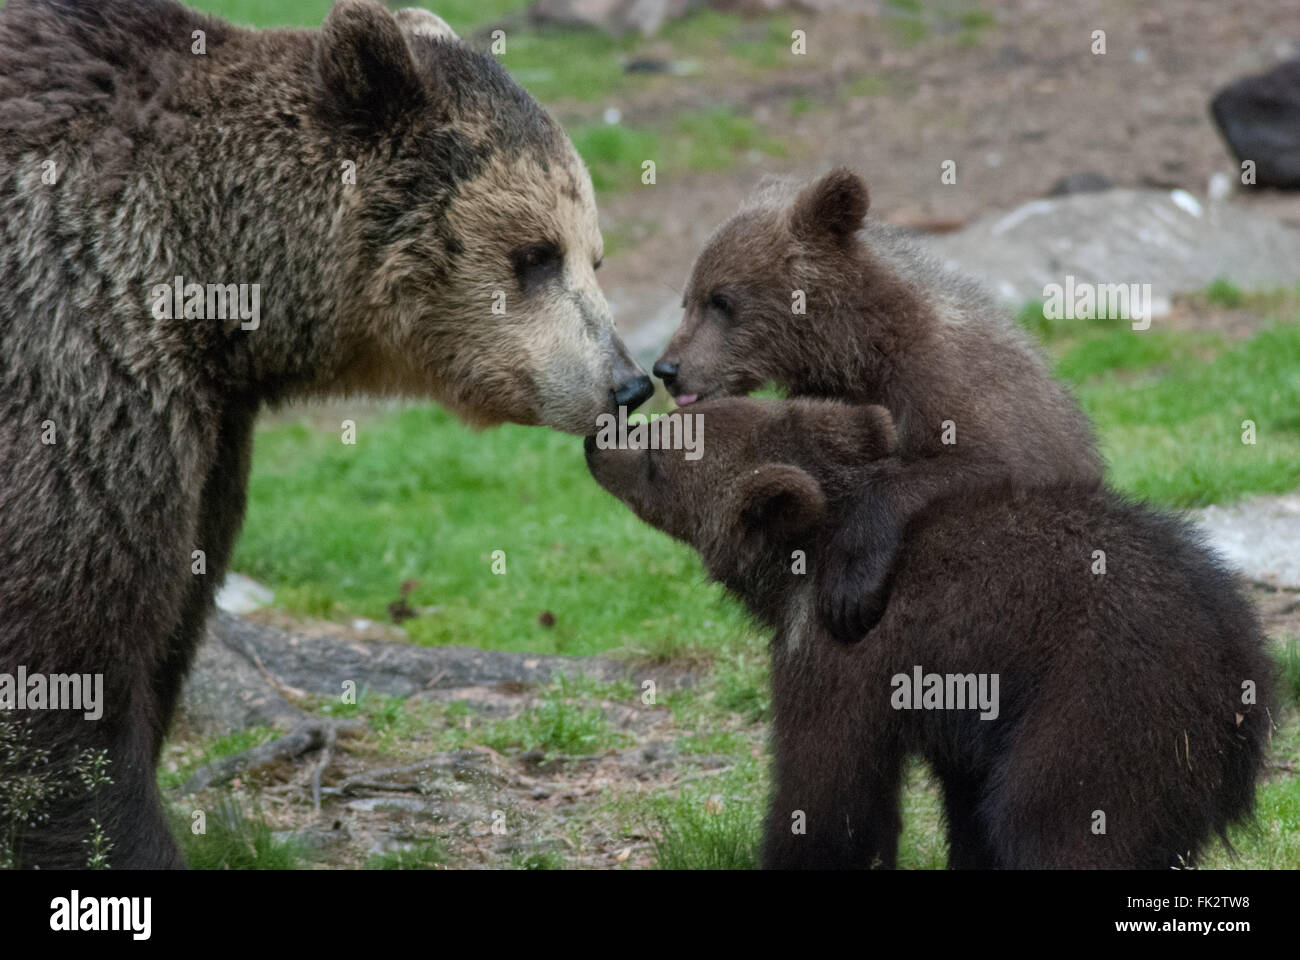 Unione di orso bruno eurasiatico o orso bruno ( Ursus arctos arctos) madre e due giovani Lupetti nella Taiga foresta in Finlandia orientale Foto Stock